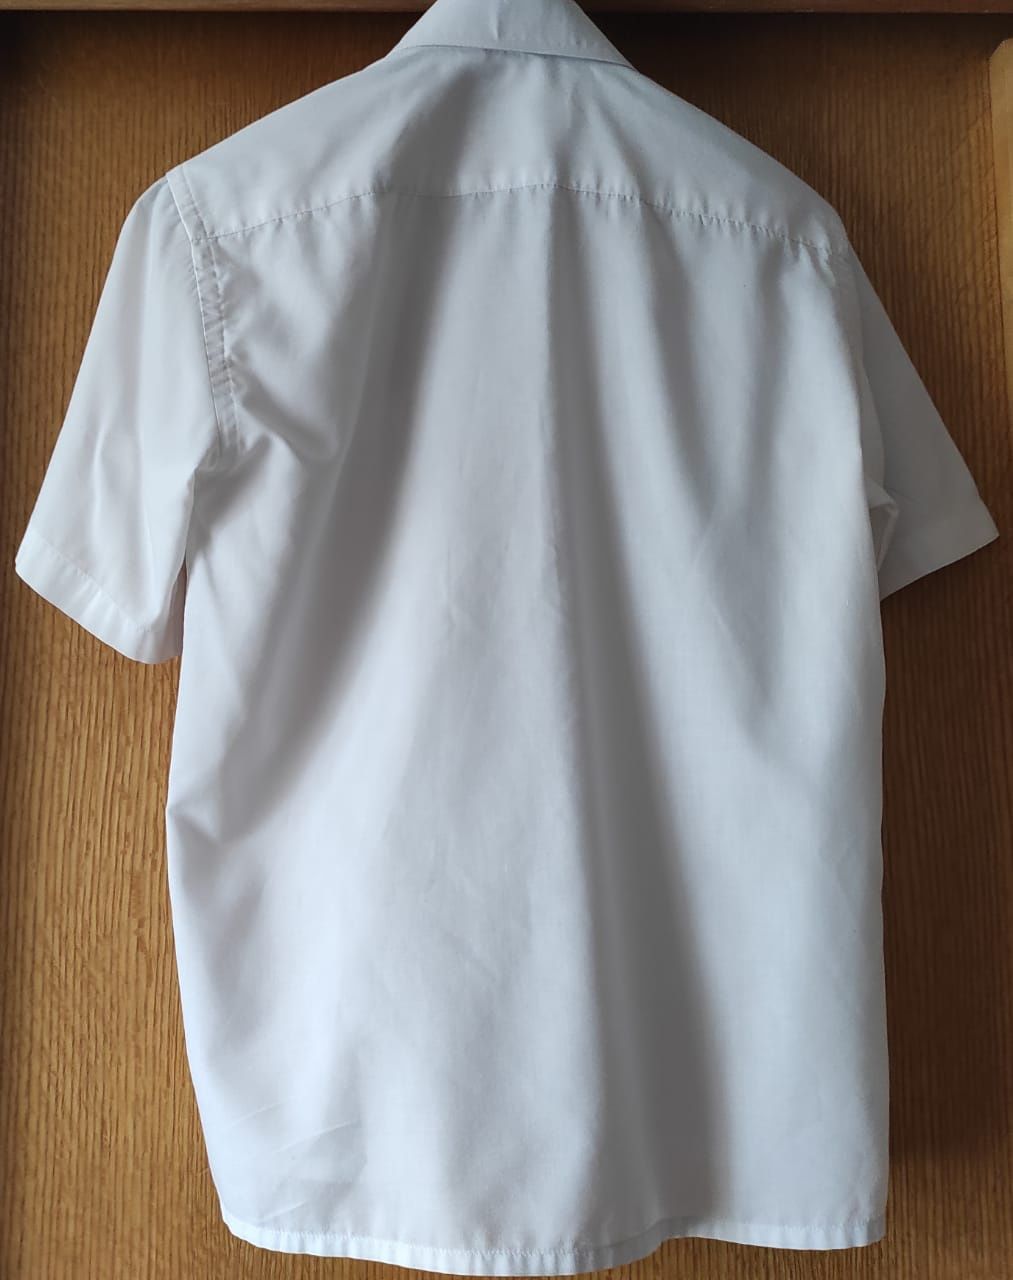 Продам белую рубашку с коротким рукавом на мальчика 11-13 лет, LANVIN